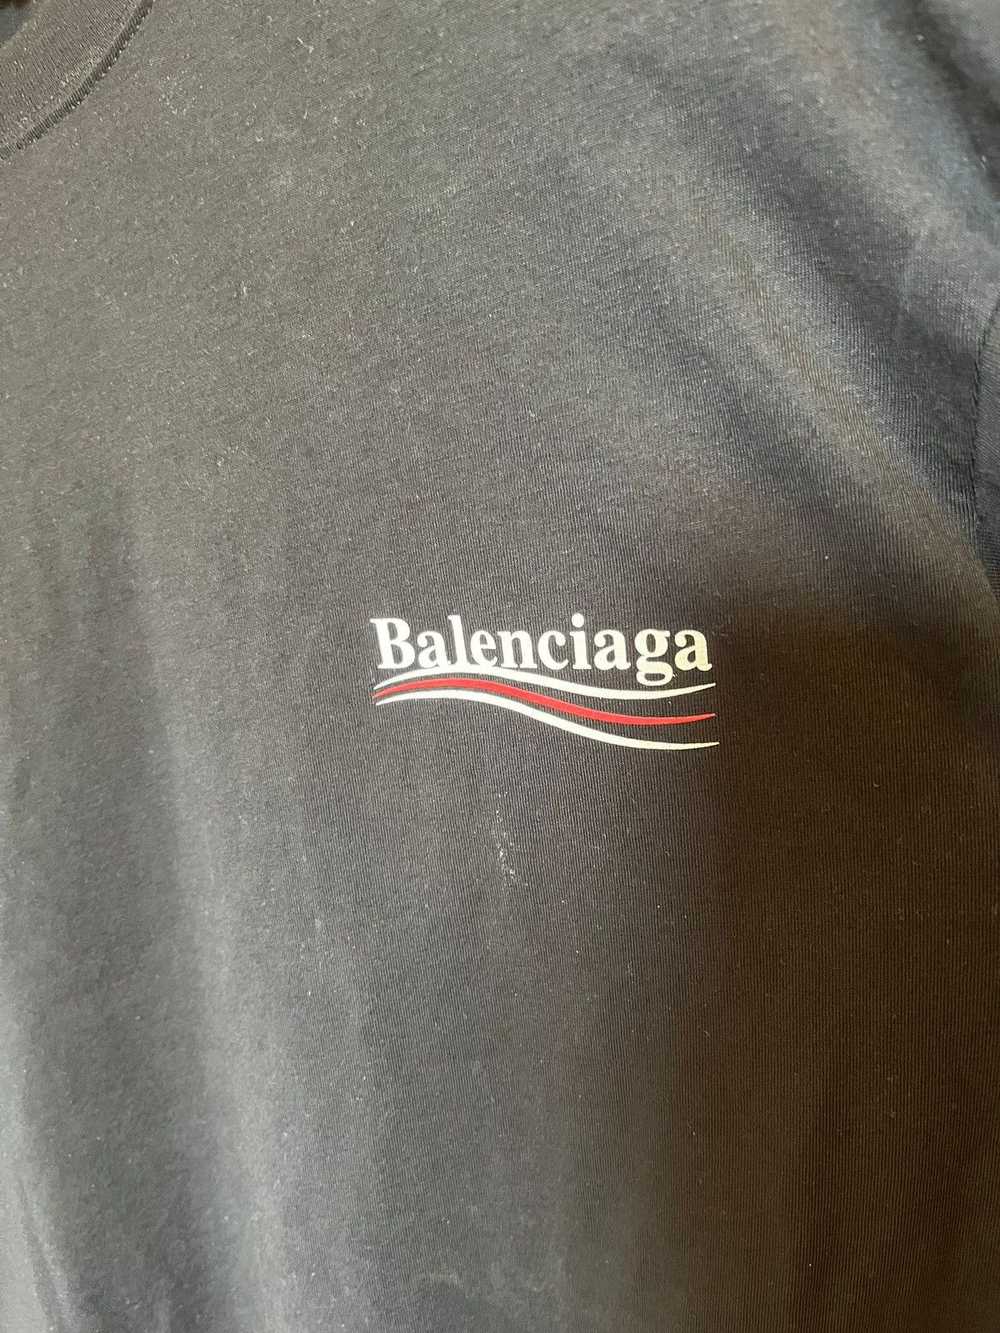 Balenciaga Balenciaga Campaign T-Shirt - image 2